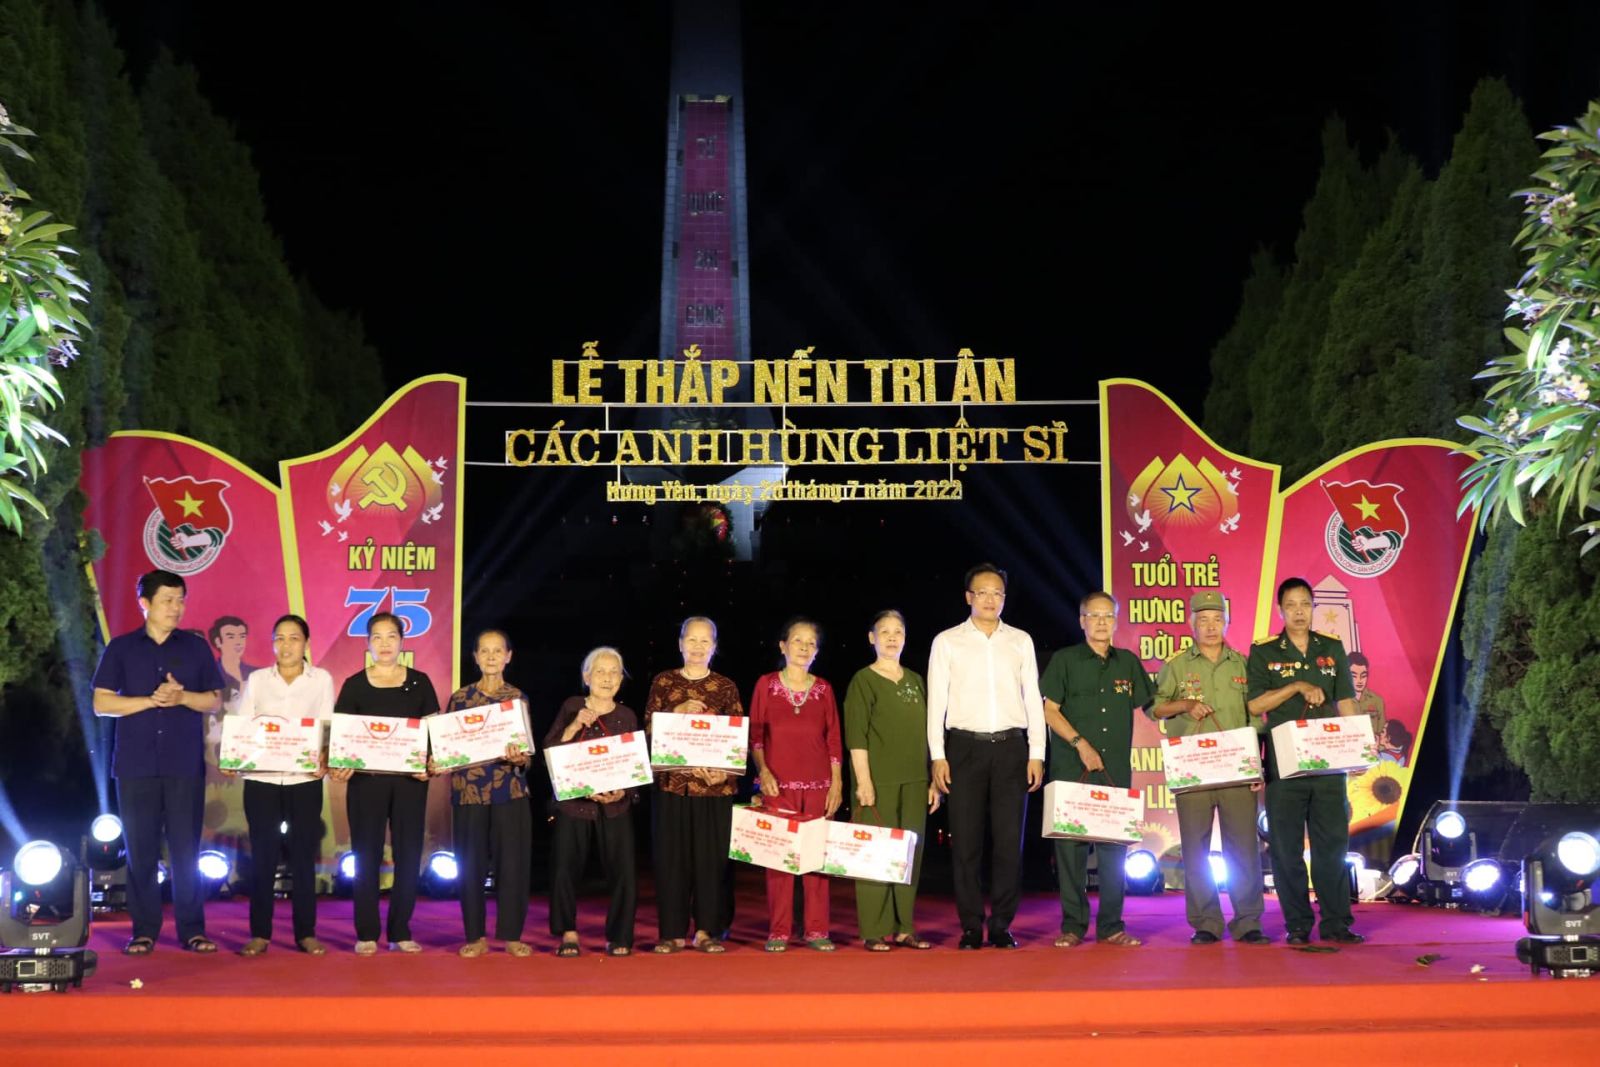 Tỉnh đoàn Hưng Yên tổ chức “Lễ Thắp nến tri ân các anh hùng liệt sĩ” năm 2022